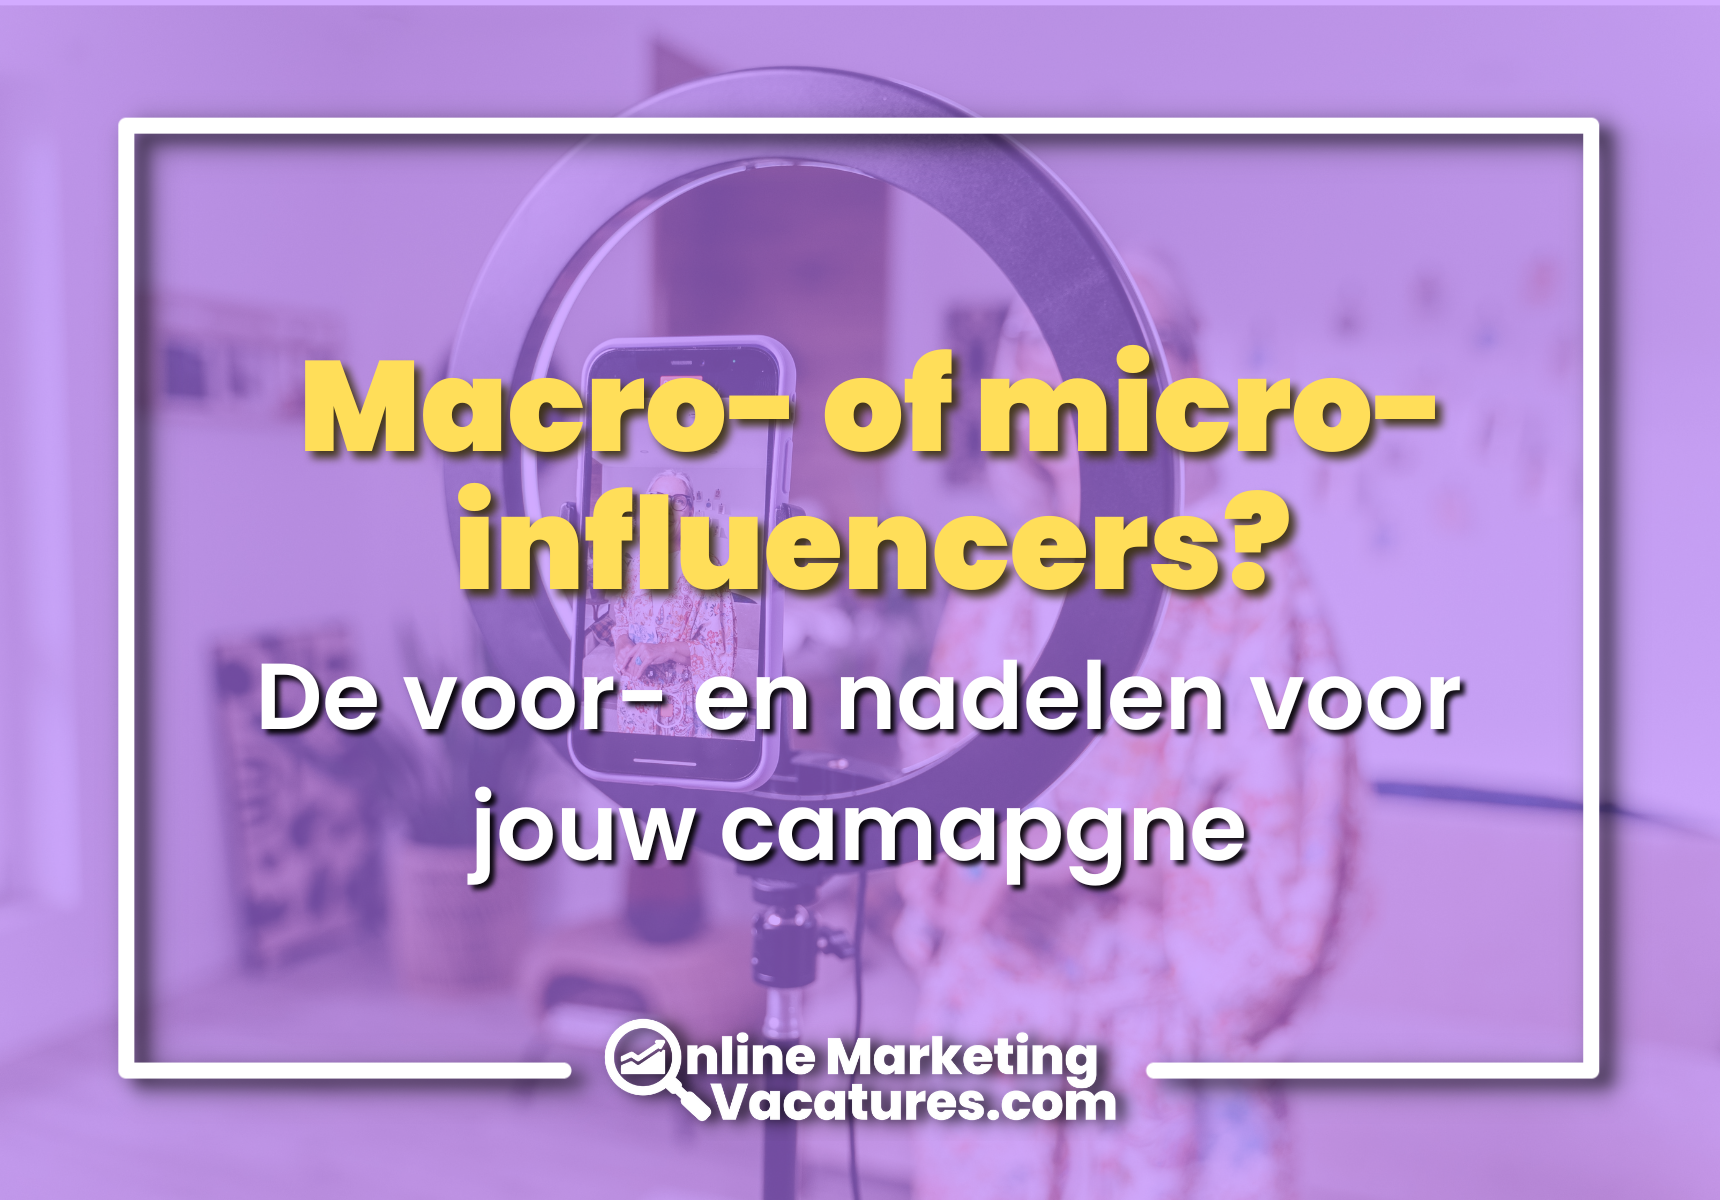 Micro-influencers vs. macro-influencers: de voor- en nadelen